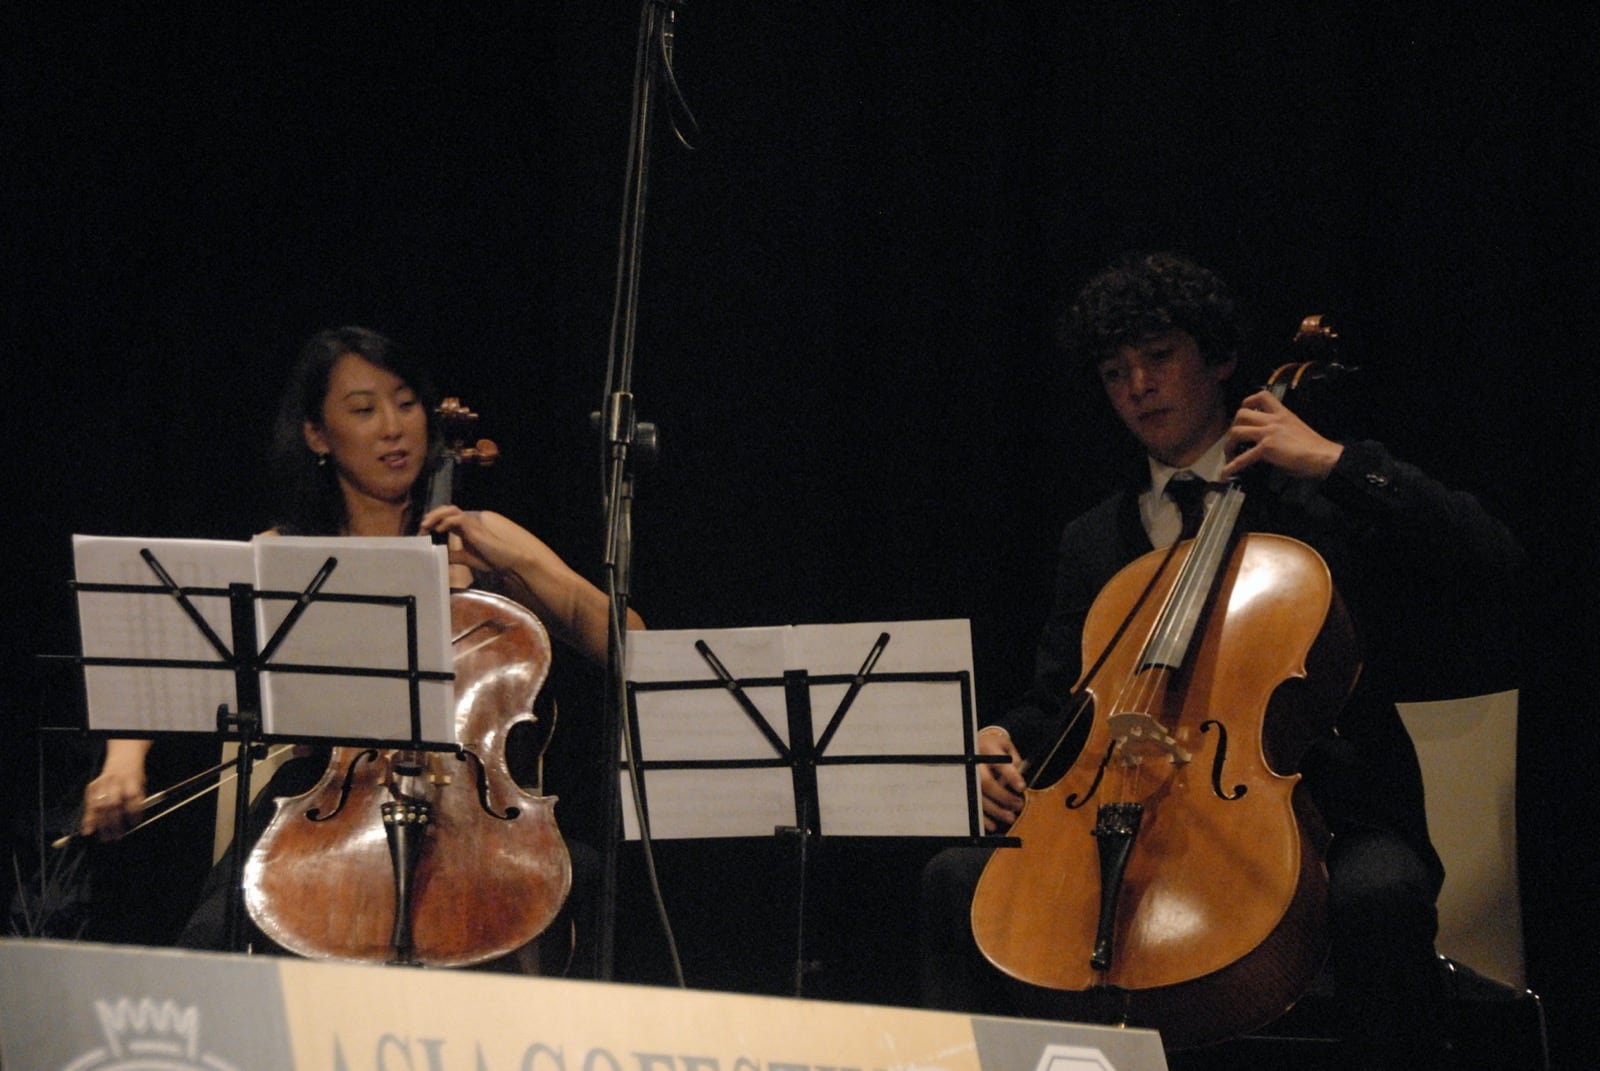 06-08-2009 - Cello Passionato009 - 